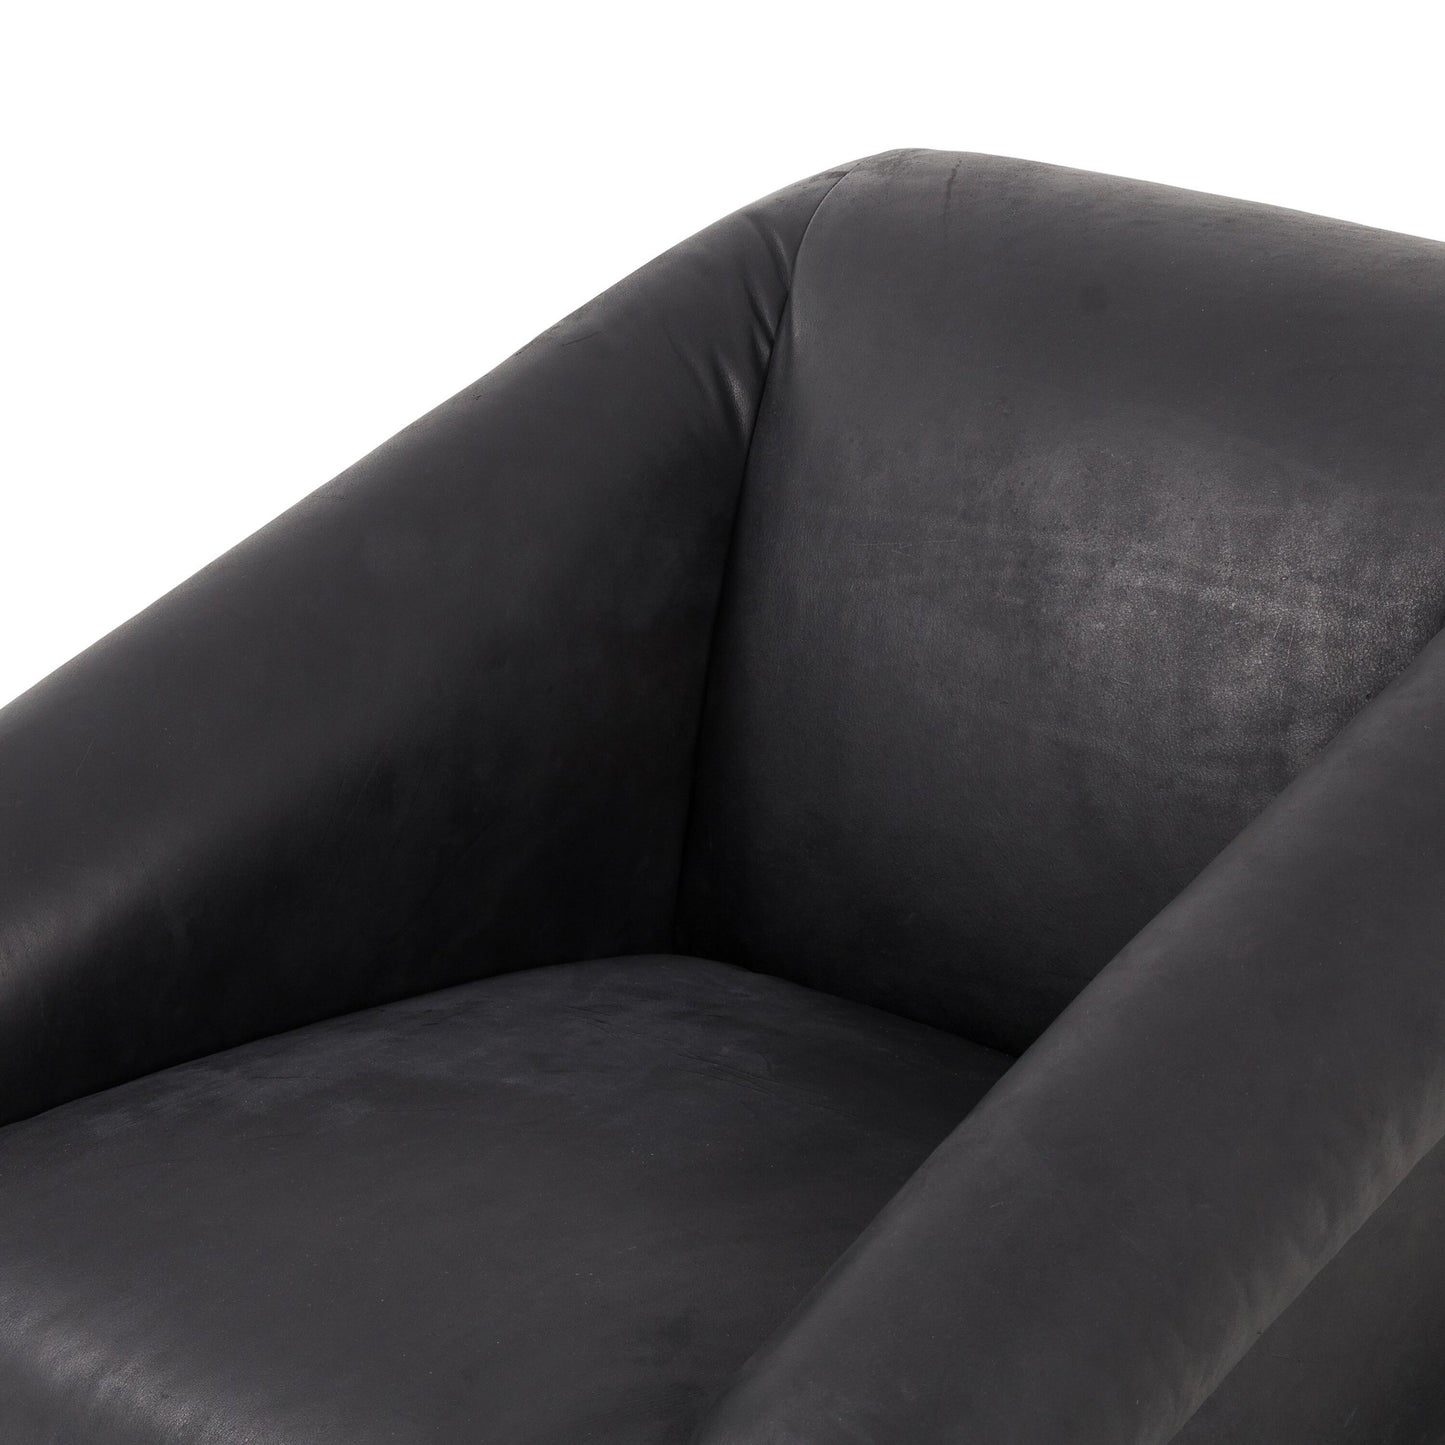 Reggie chair-heirloom black